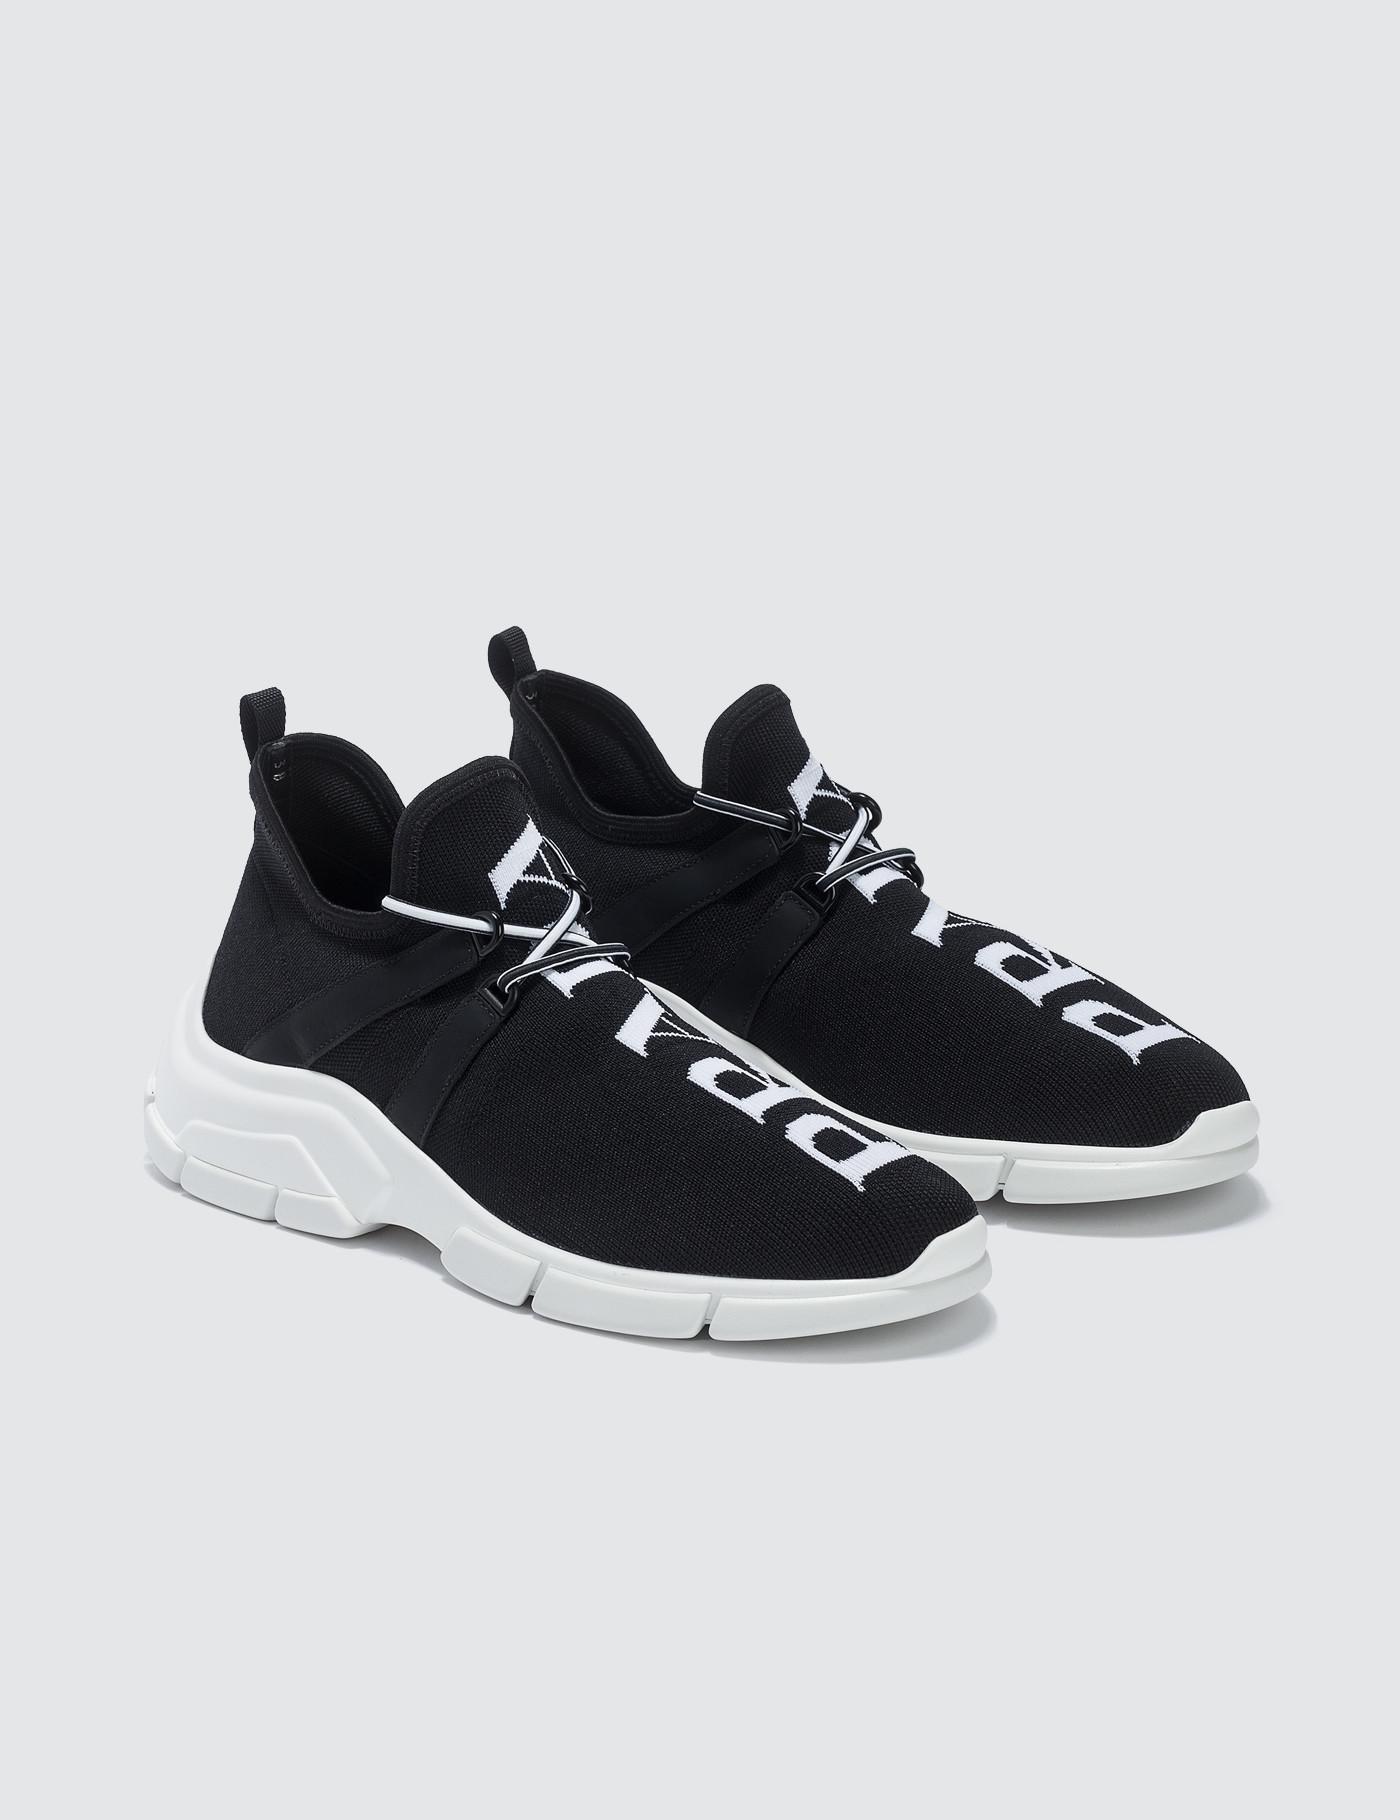 Prada Logo Knit Sneakers in Black/White (Black) - Save 62% - Lyst